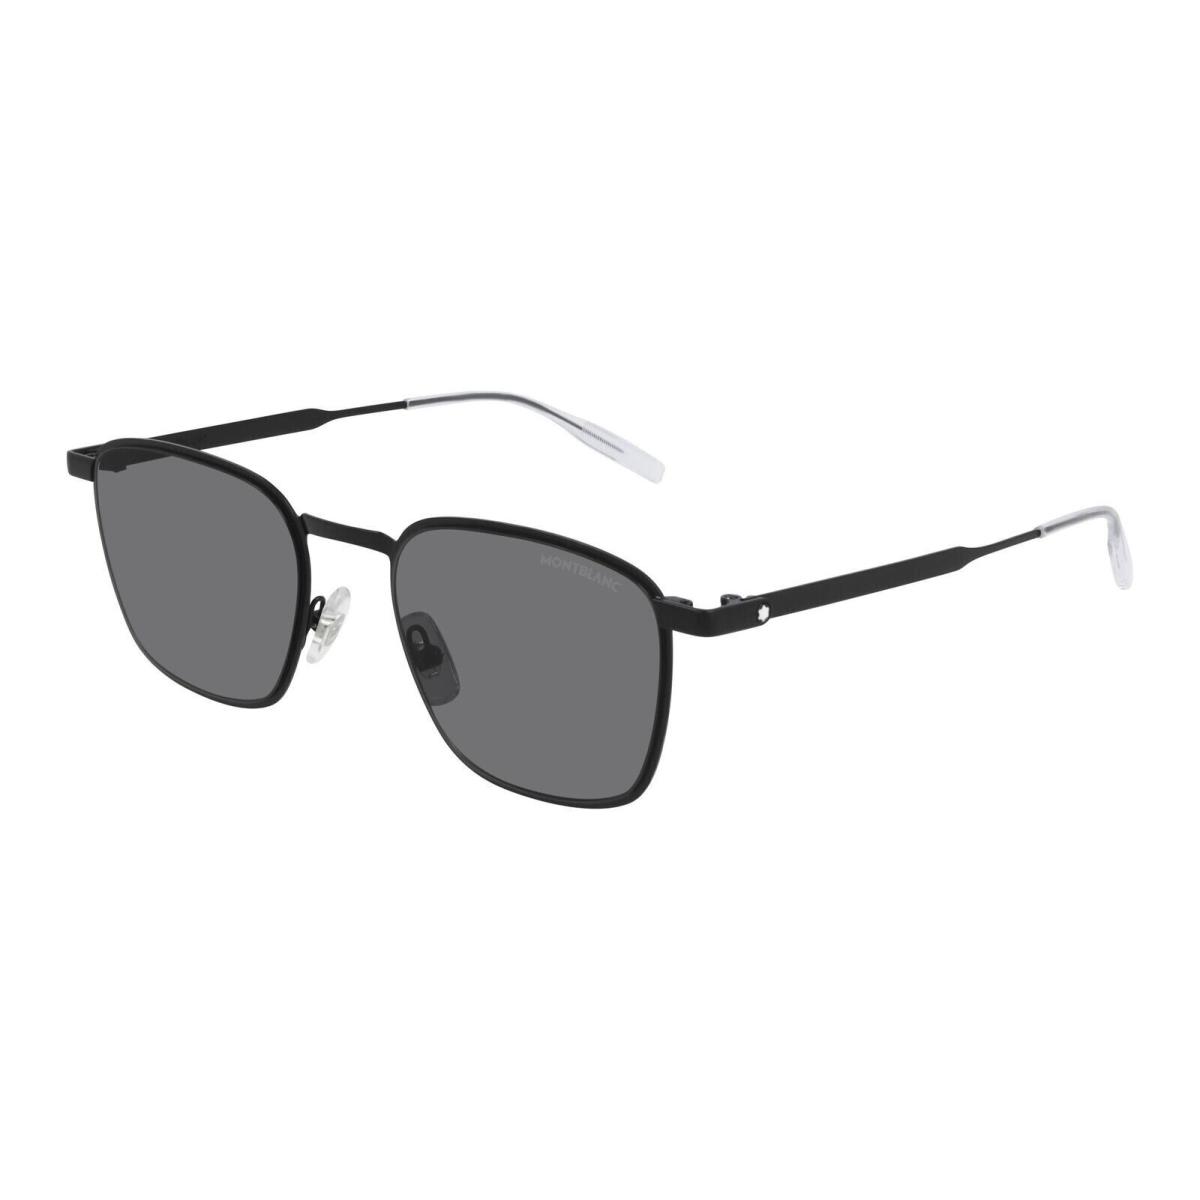 Montblanc Established MB0145S 001 51 Sunglasses Black Frame Gray Lens